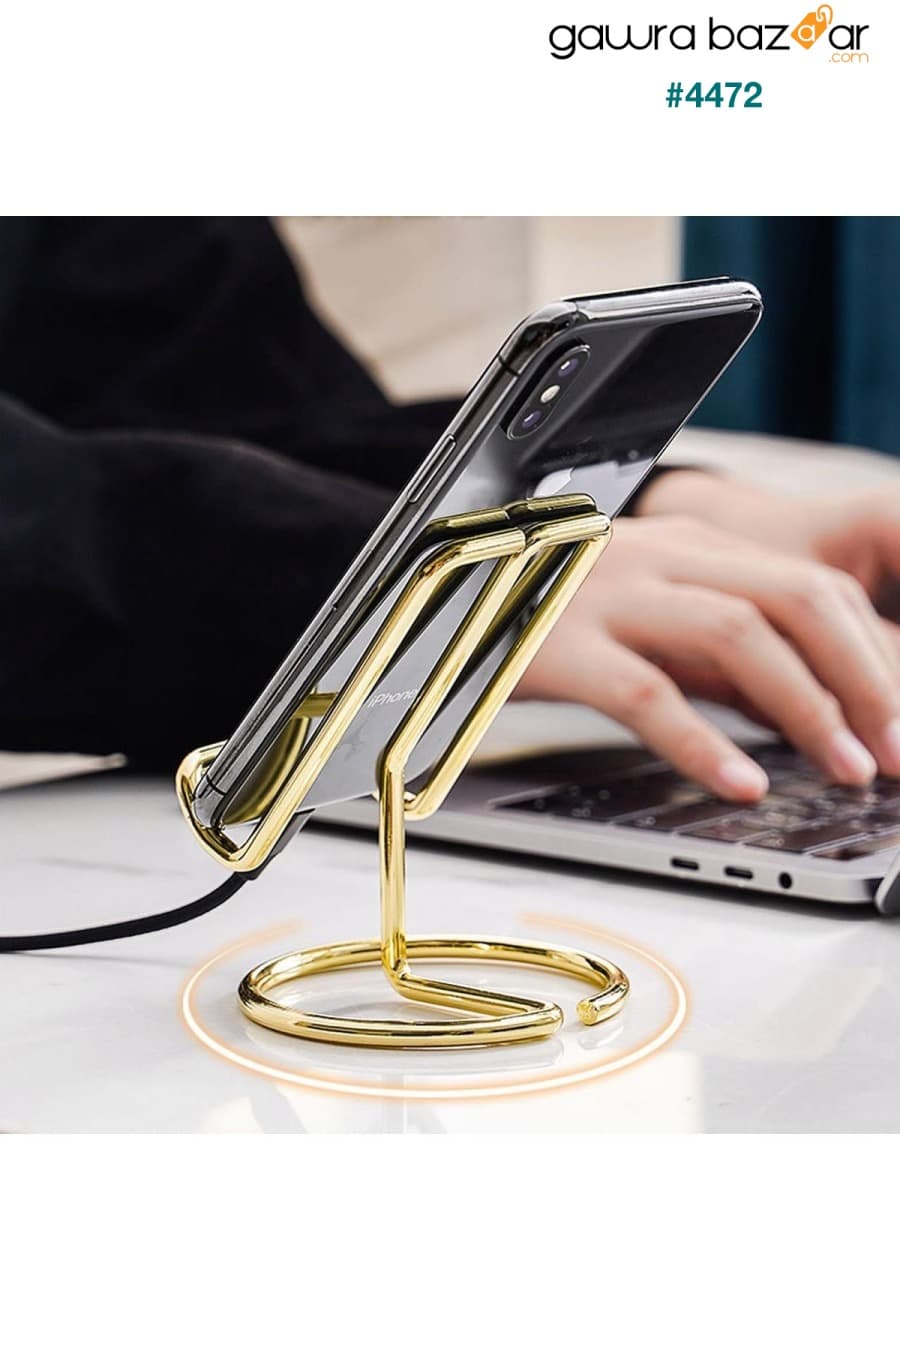 حامل هاتف سطح المكتب المعدني الذهبي Miniminti 0